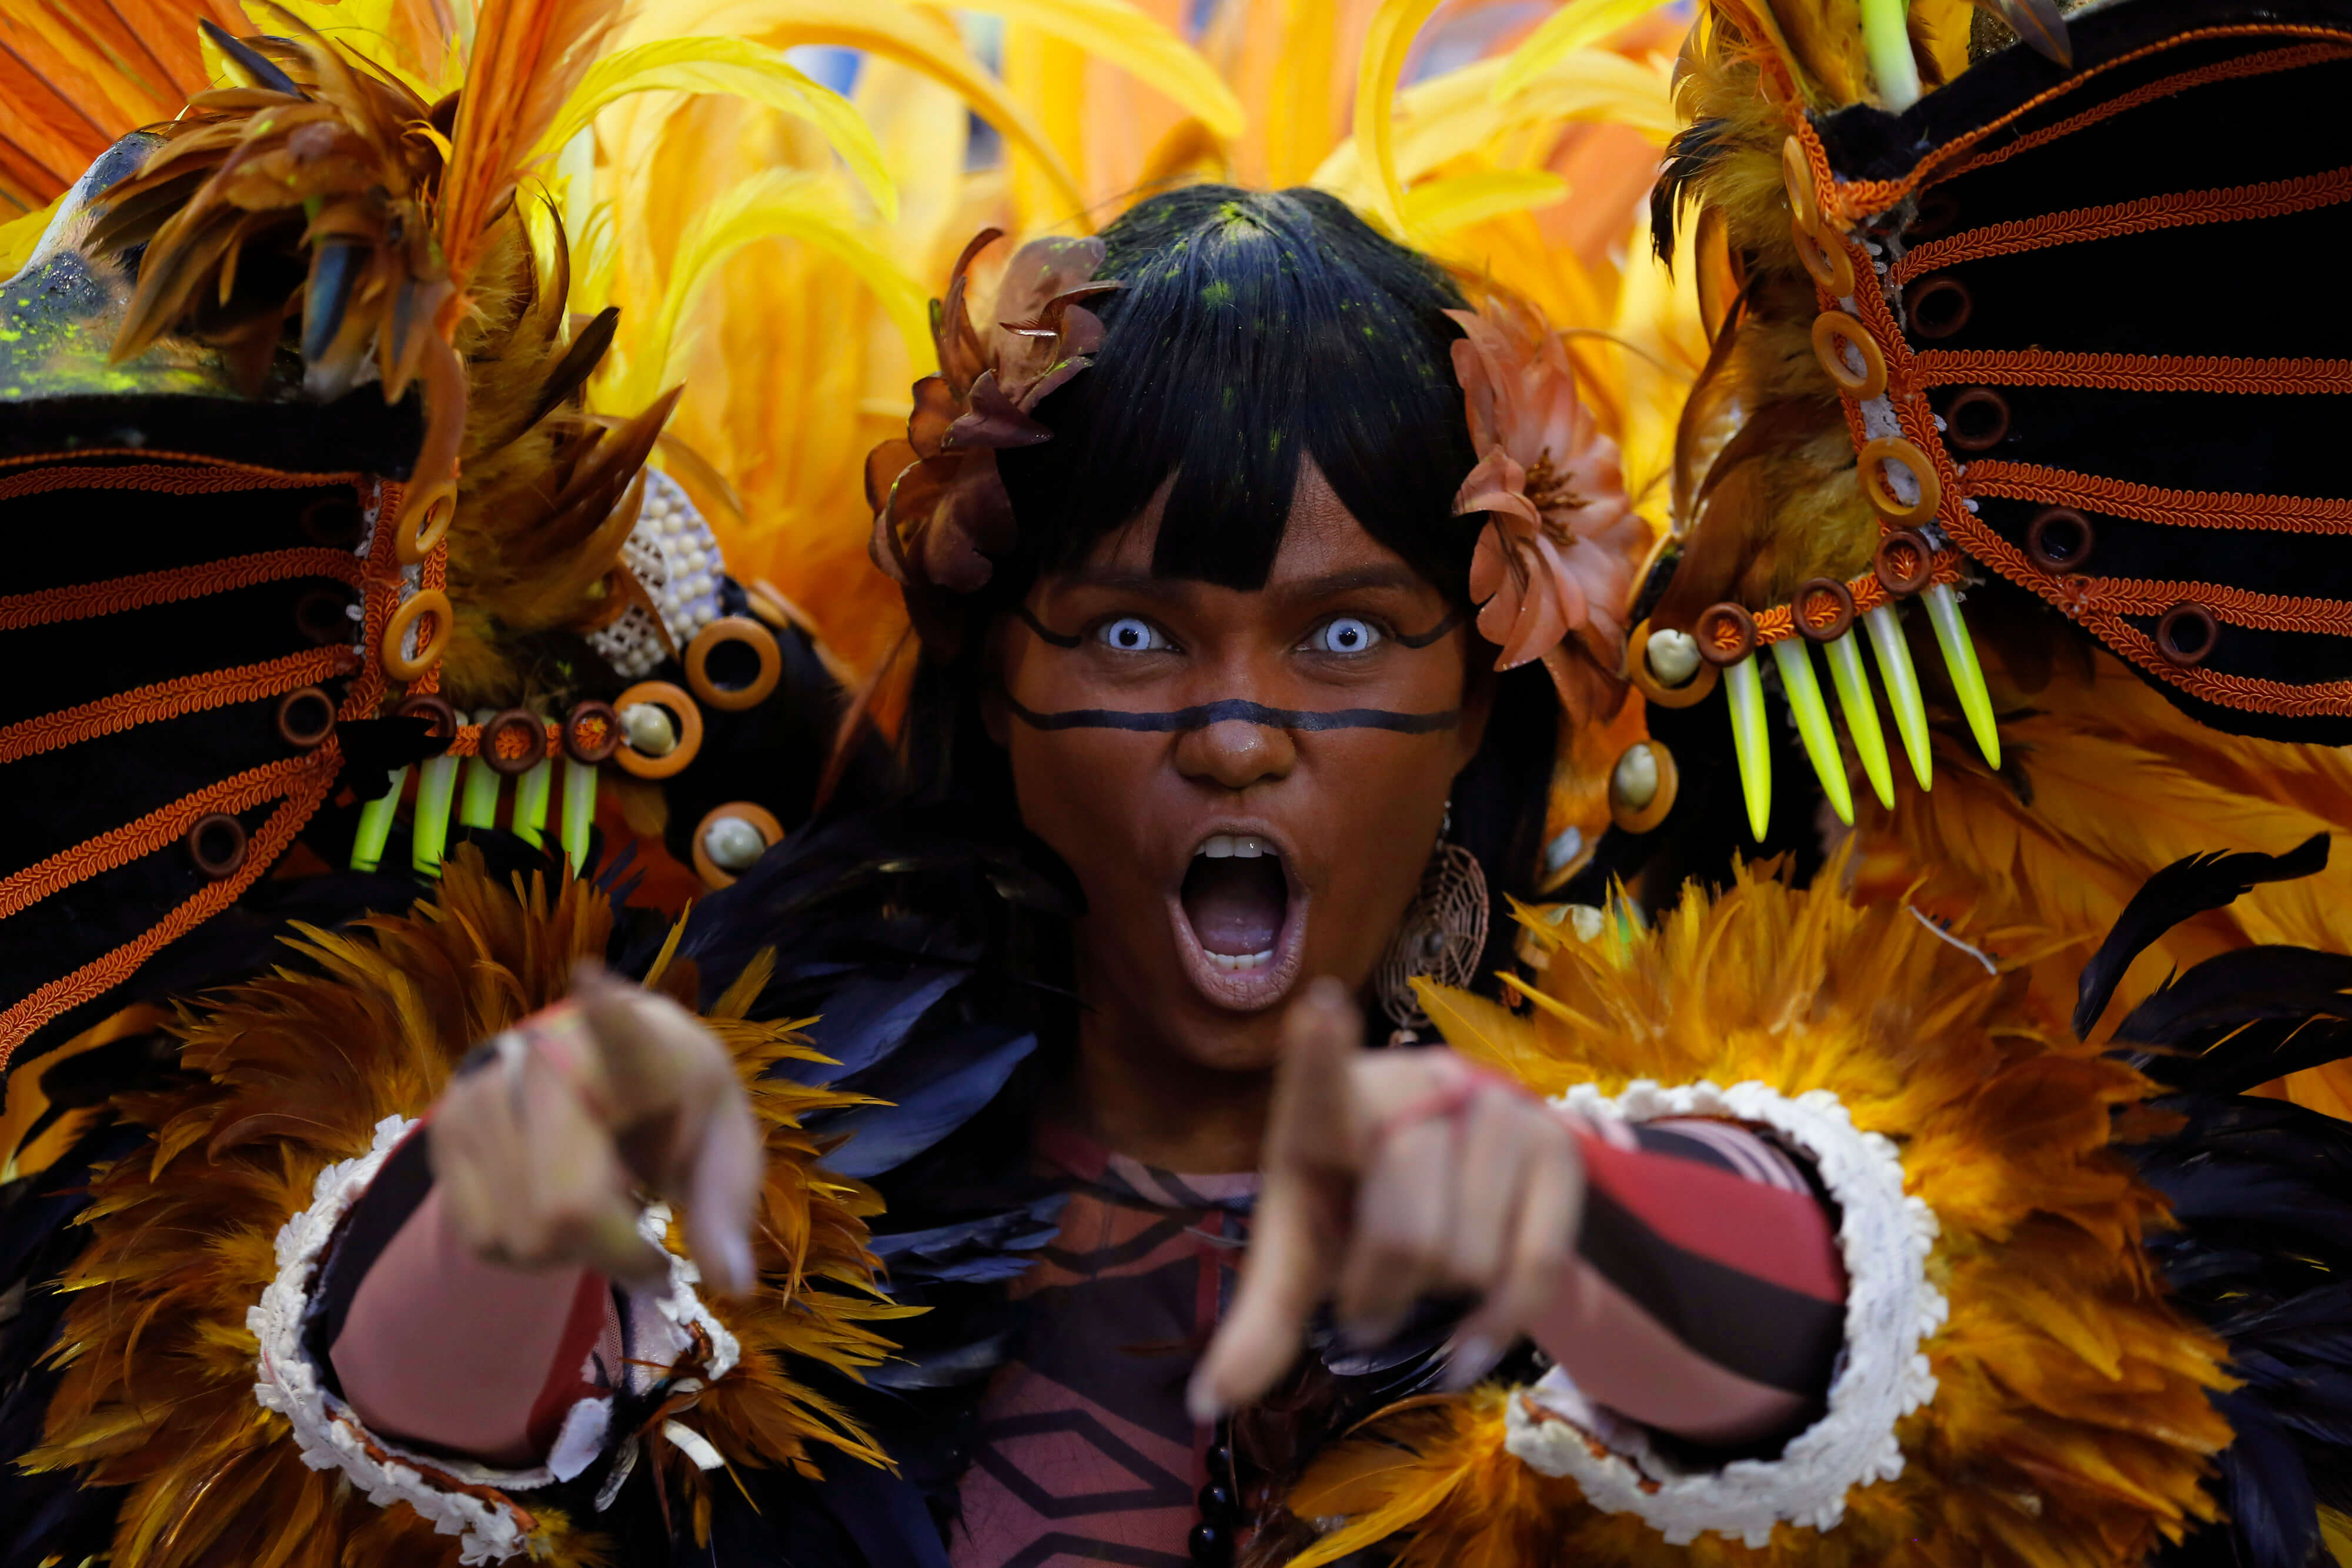 Miles de bailarines repletos de lentejuelas y plumas desfilaron en el Sambódromo de Río de Janeiro.